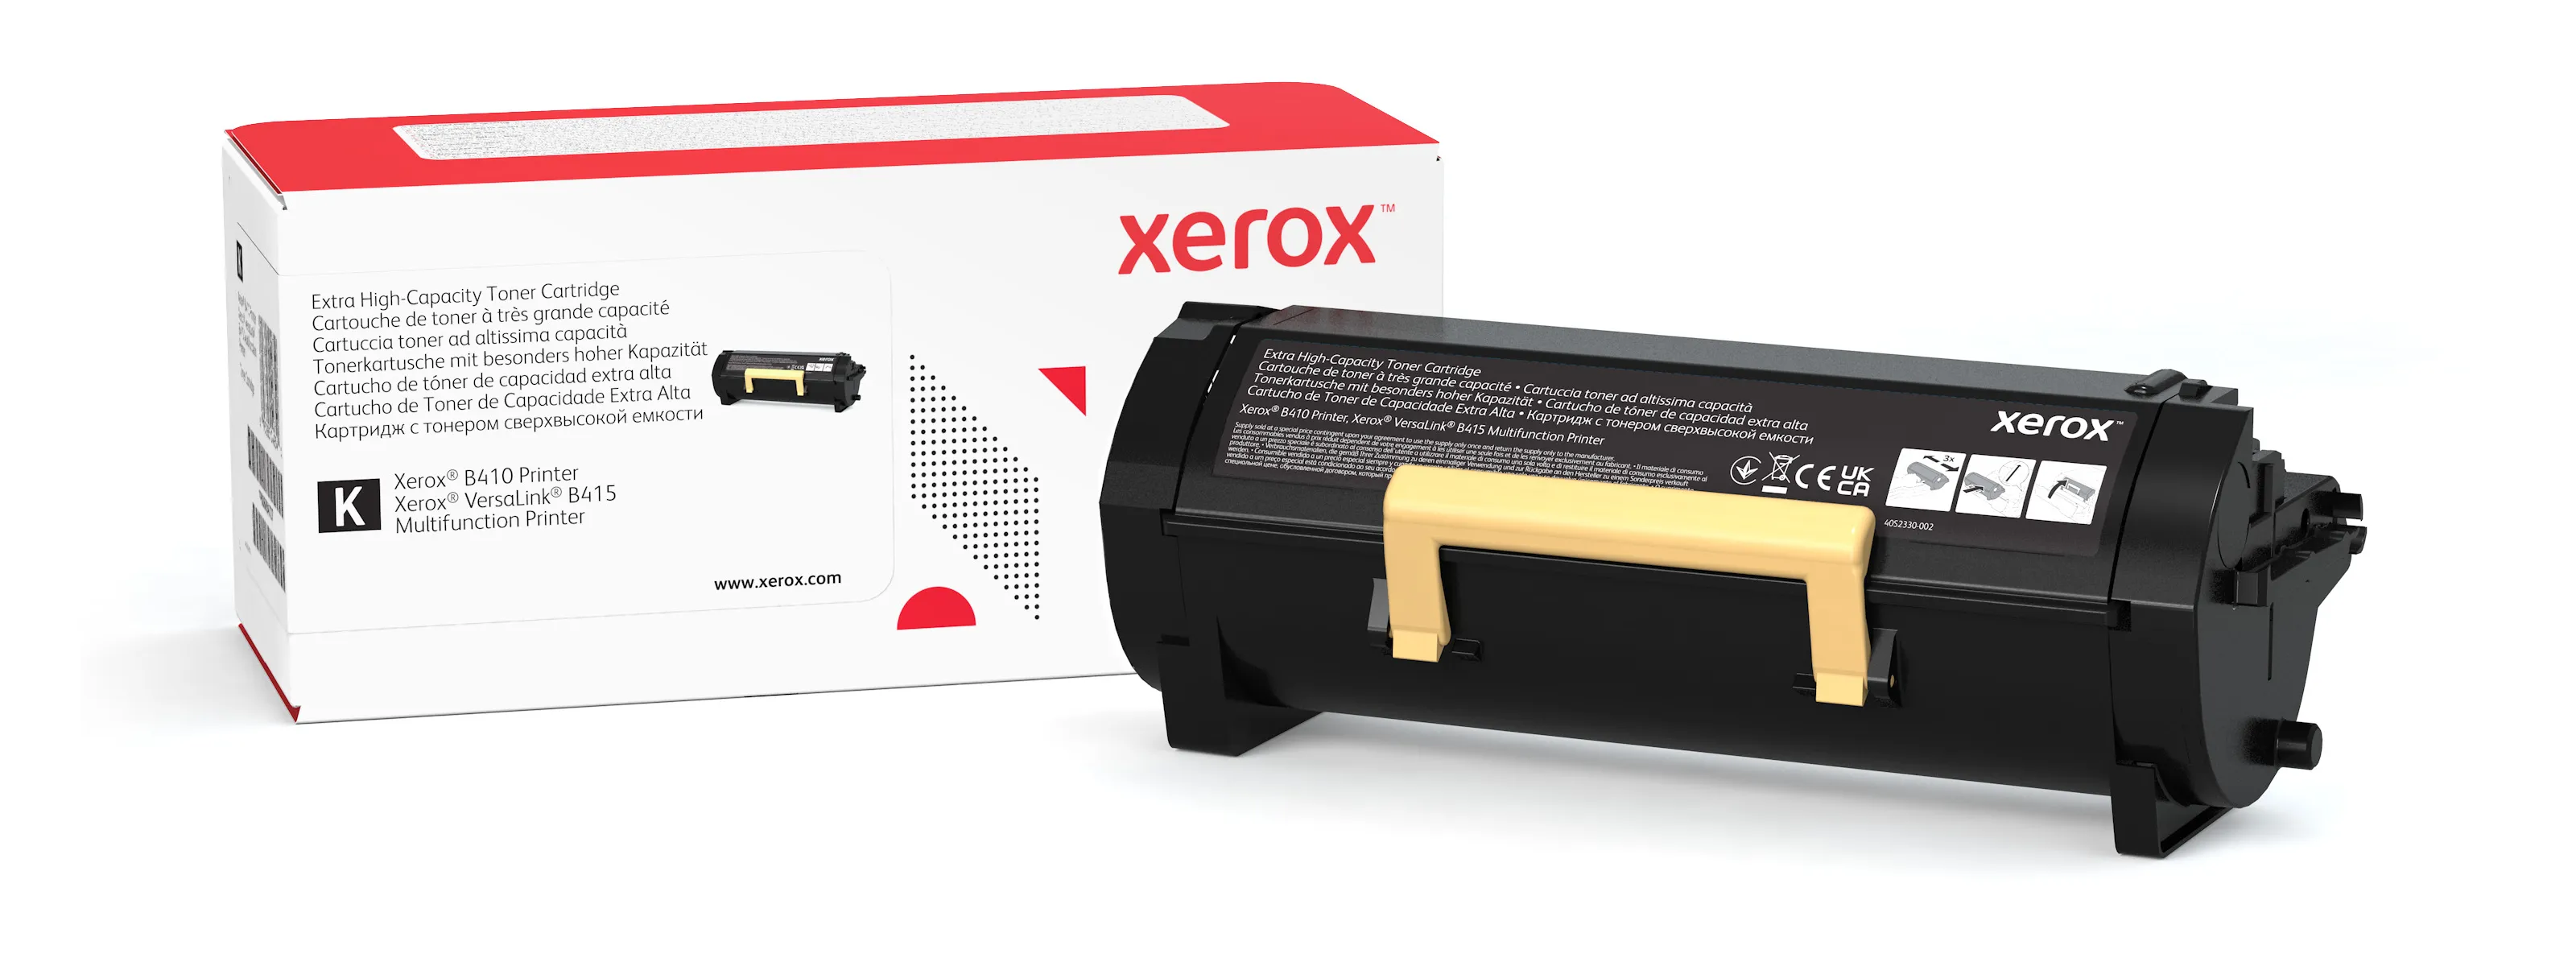 Achat Cartouche de toner Noir de Très haute capacité Xerox au meilleur prix